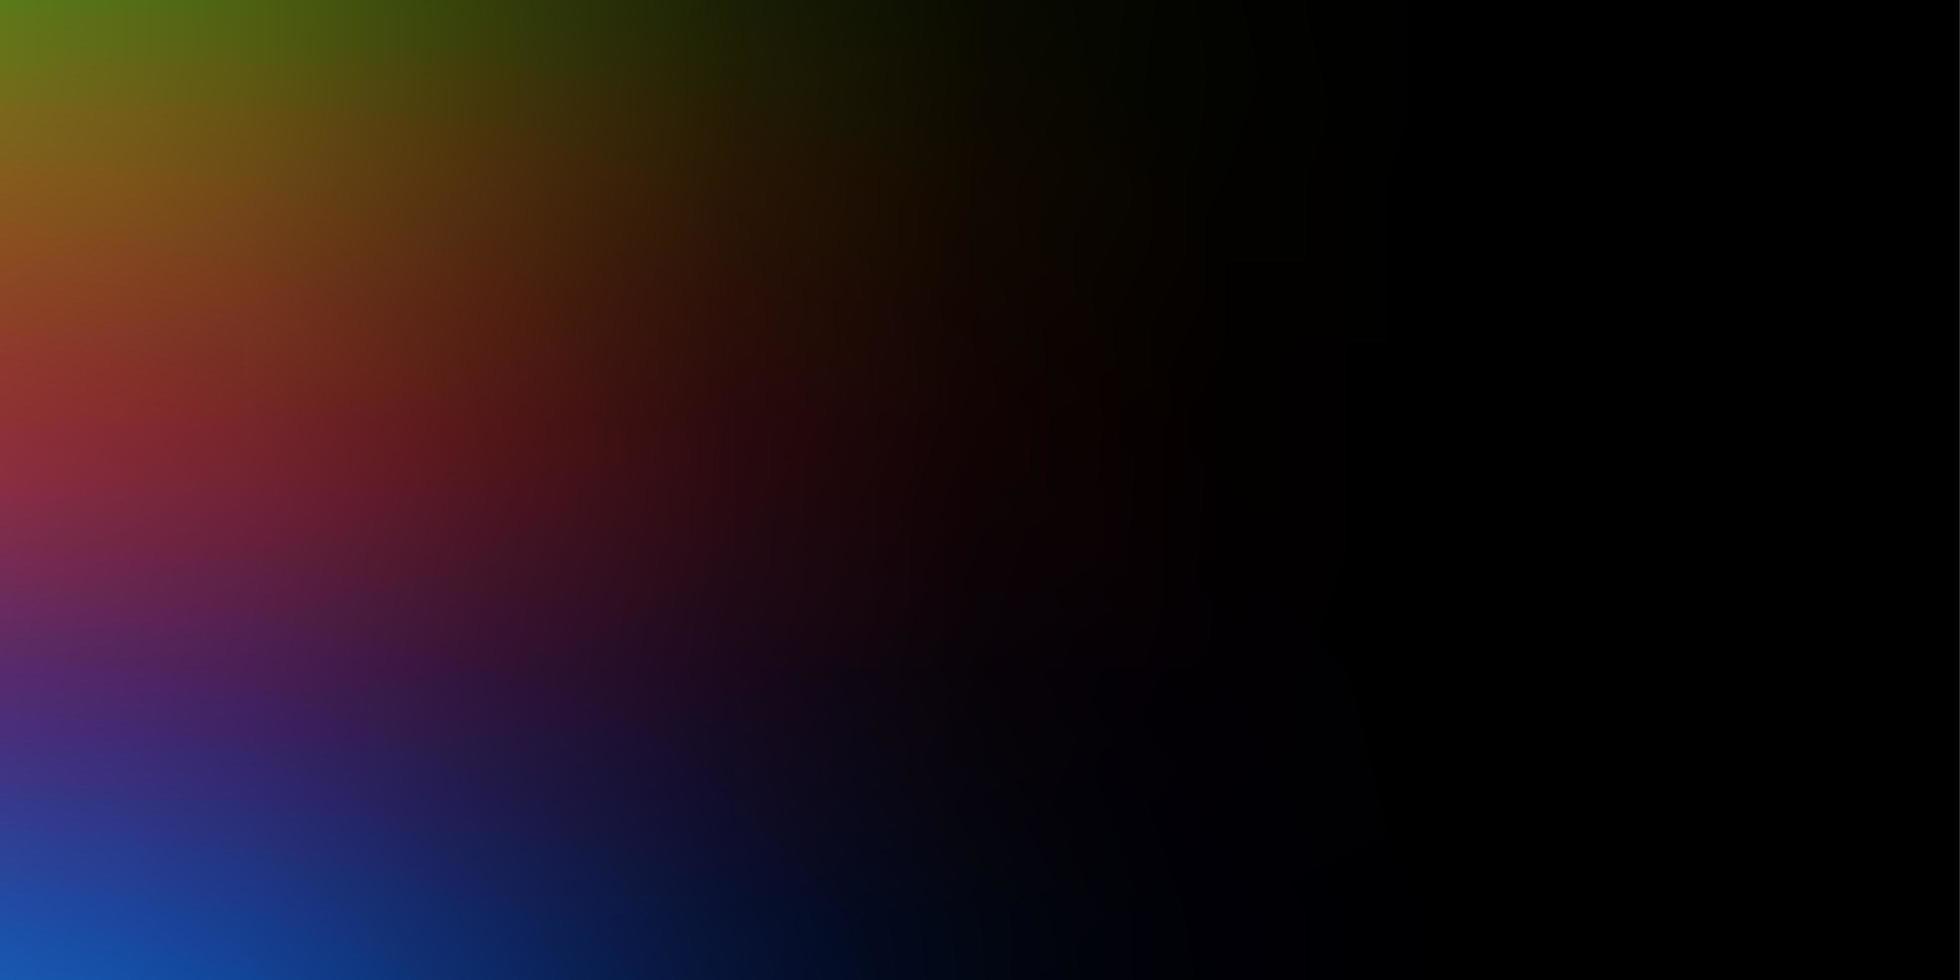 Resumo de vetor multicolor escuro fundo desfocado nova ilustração colorida em estilo desfocado com base gradiente para o design de seu aplicativo